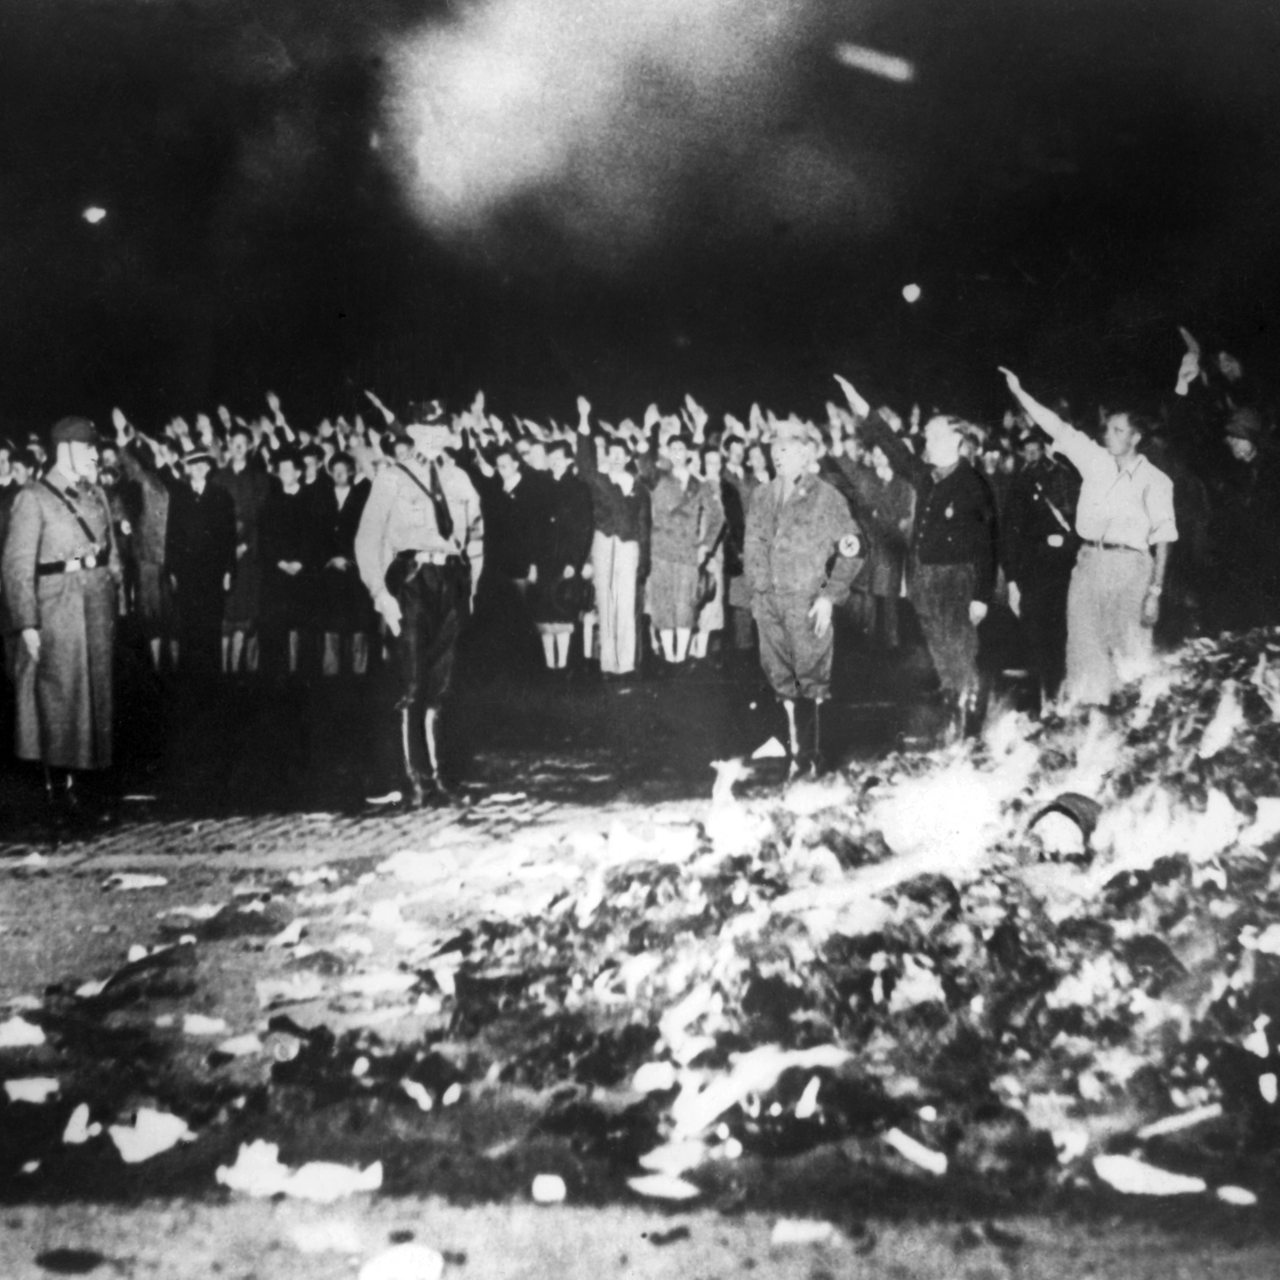 Aufnahme der Bücherverbrennung durch die Nationalsozialisten nach der Machtübernahme 1933